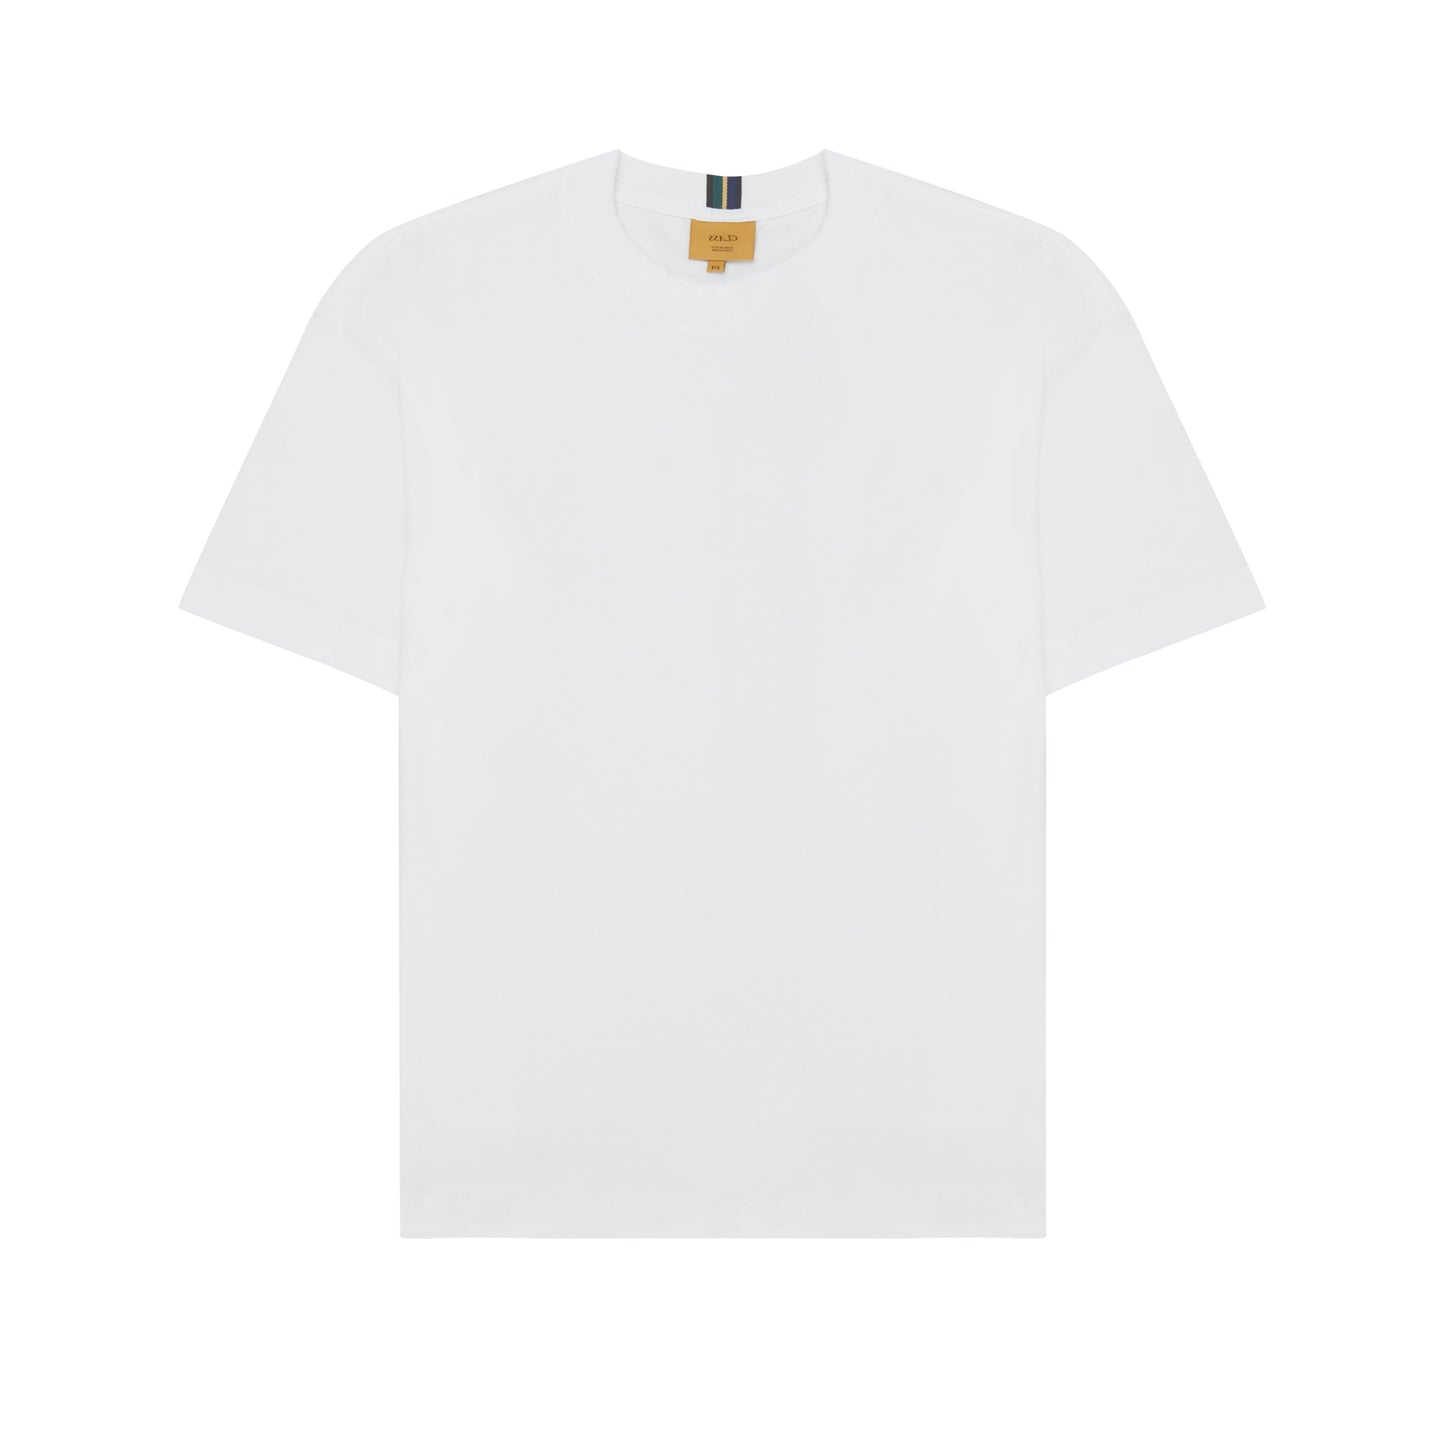 CLASS - Camiseta Orelhão "Off White" - THE GAME